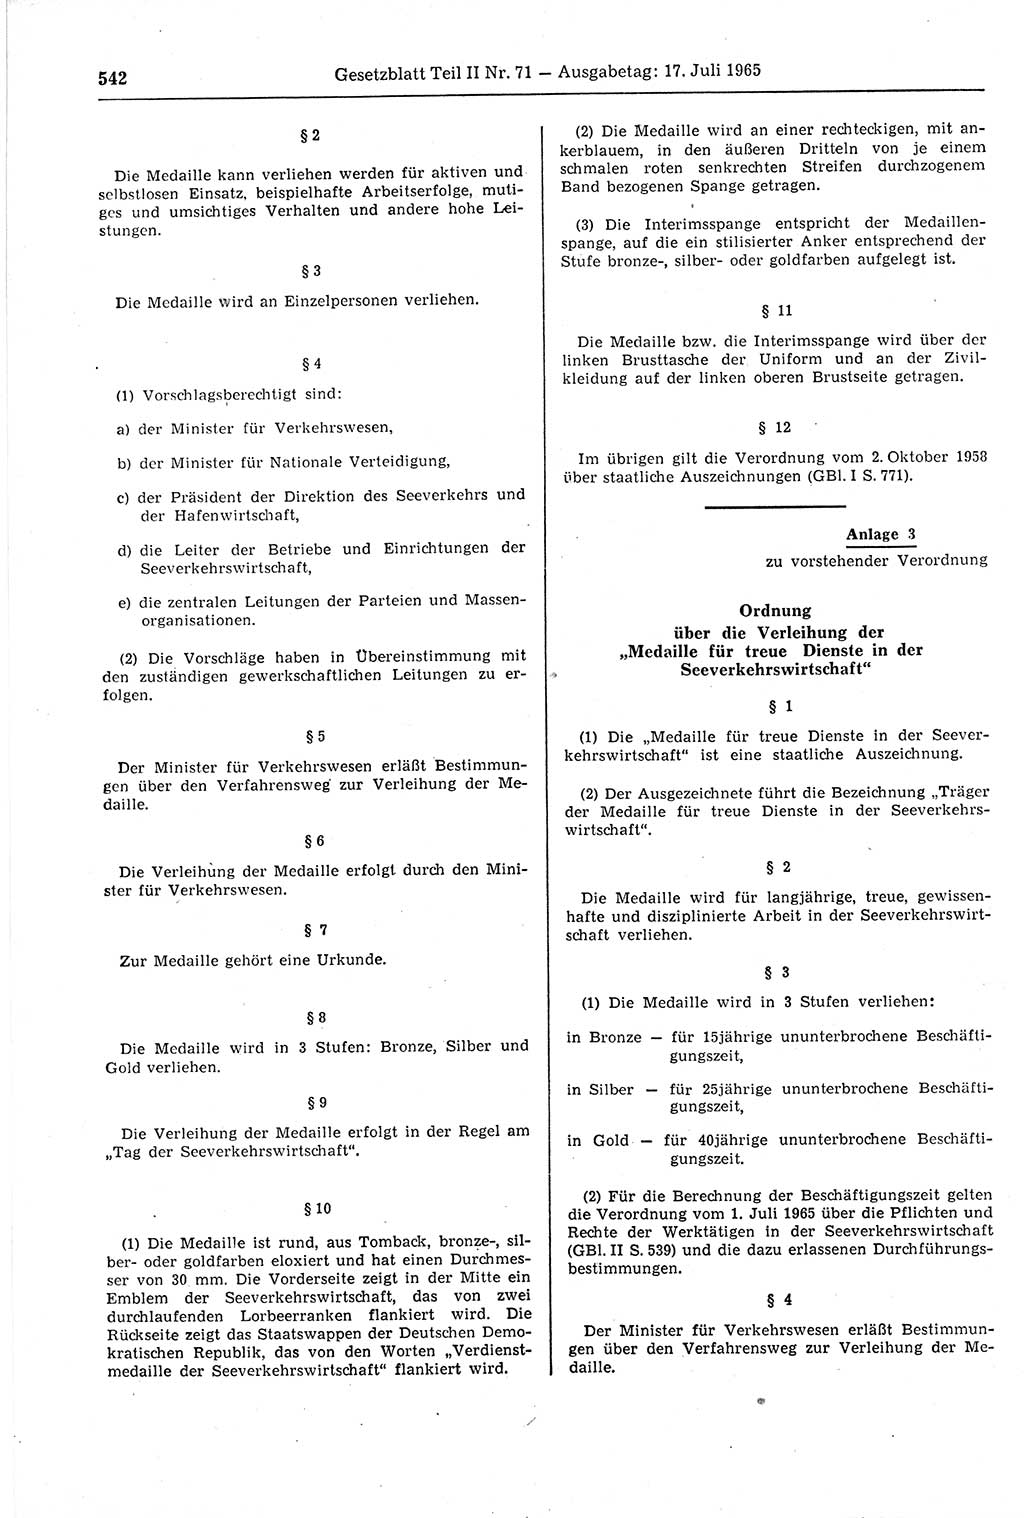 Gesetzblatt (GBl.) der Deutschen Demokratischen Republik (DDR) Teil ⅠⅠ 1965, Seite 542 (GBl. DDR ⅠⅠ 1965, S. 542)